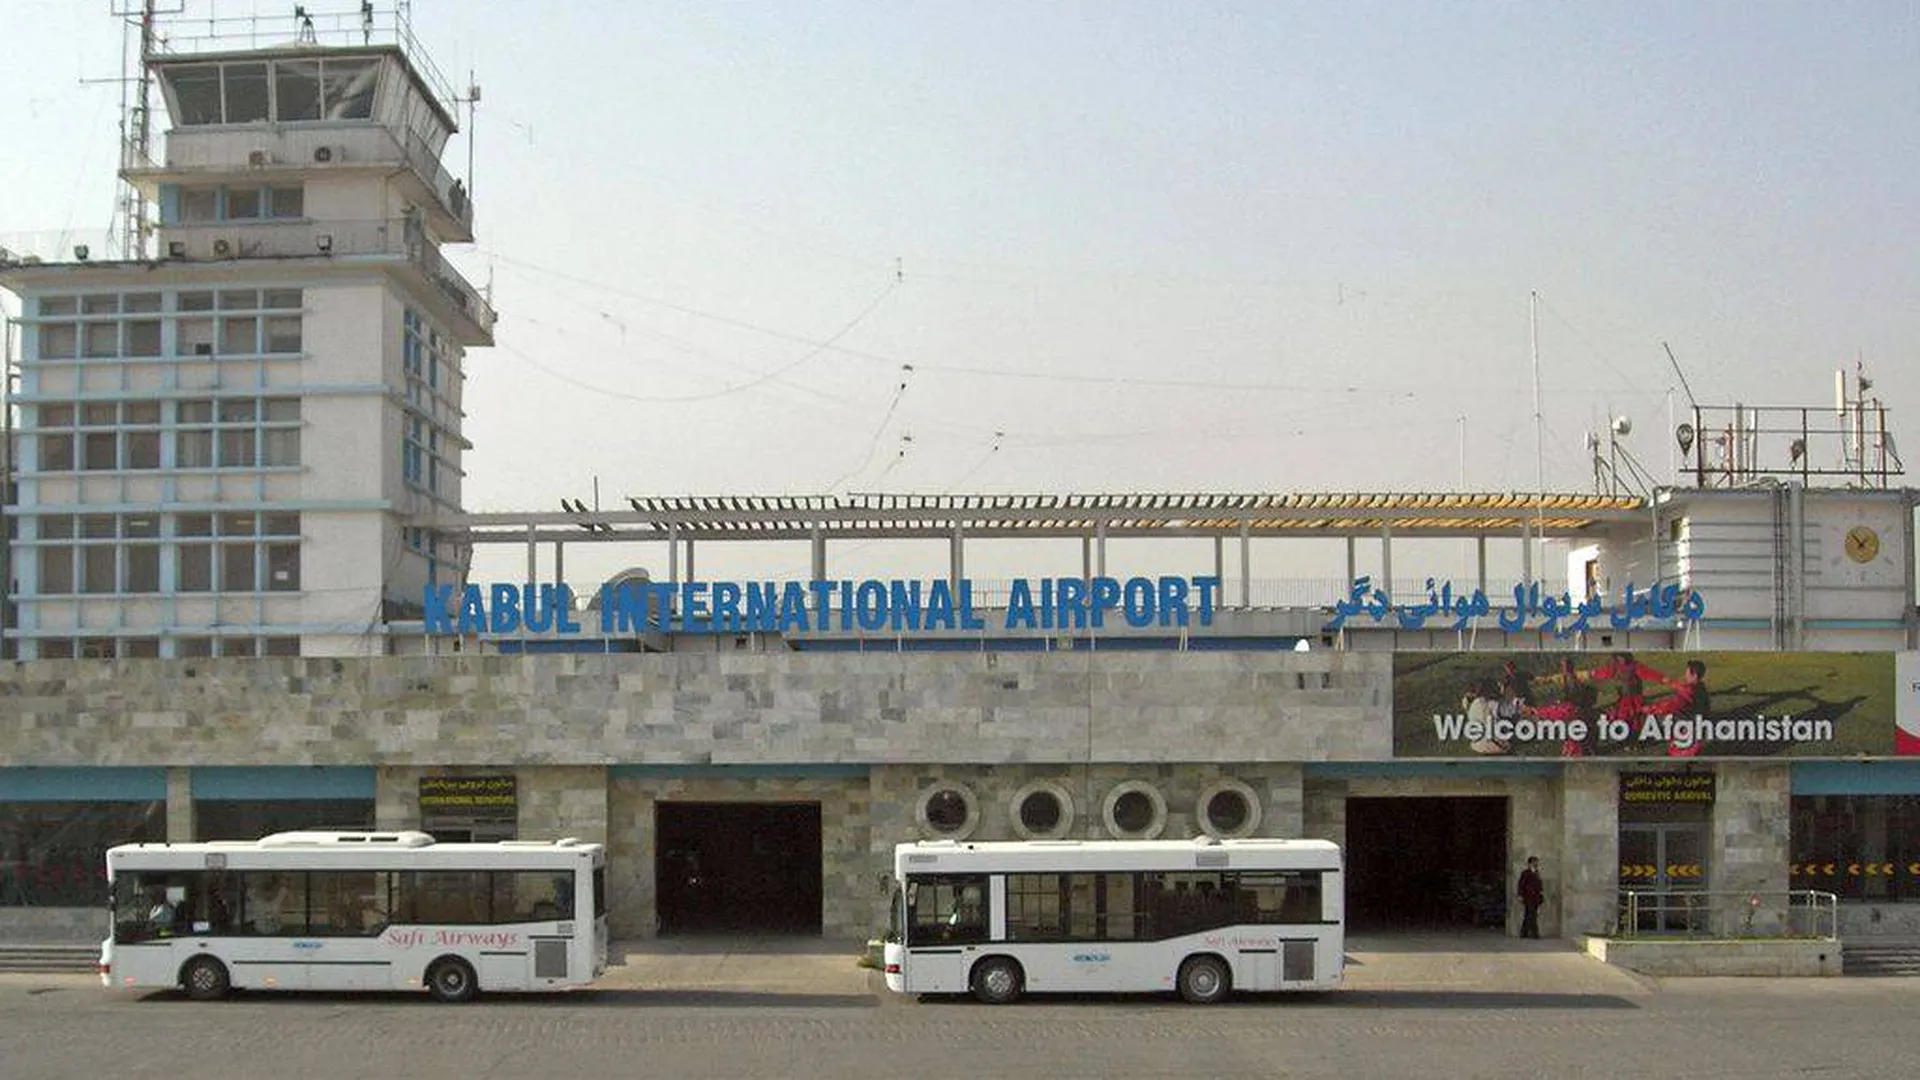 «Это направлено против американцев». Политолог Марков объяснил причину взрыва в аэропорту Кабула